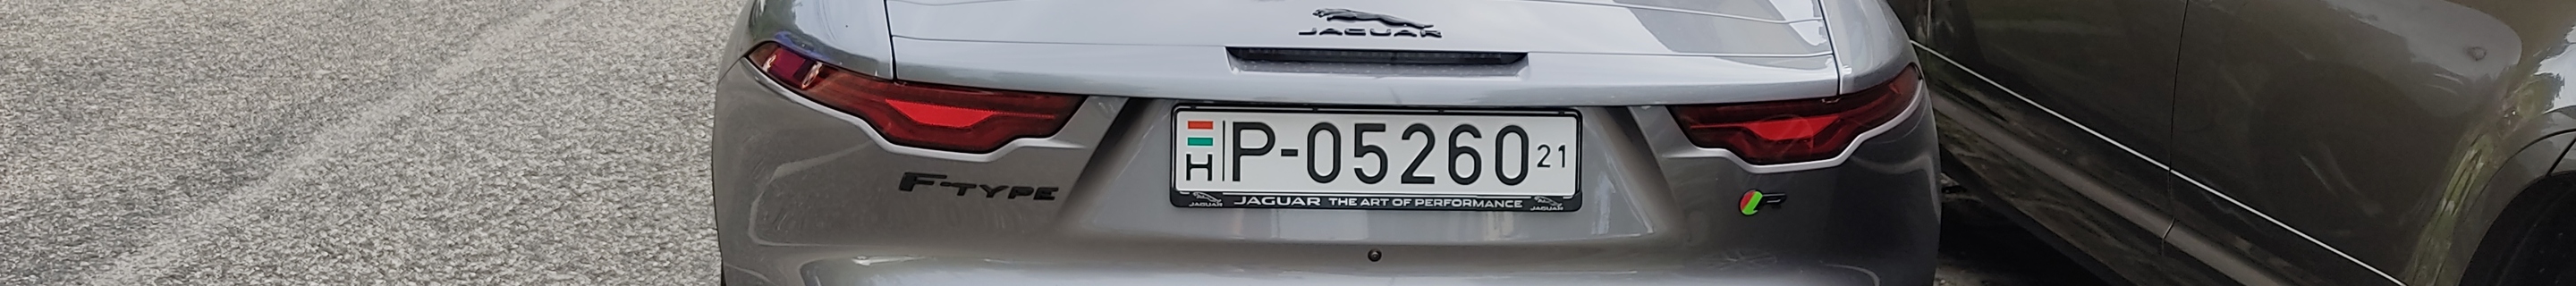 Jaguar F-TYPE R Convertible 2020